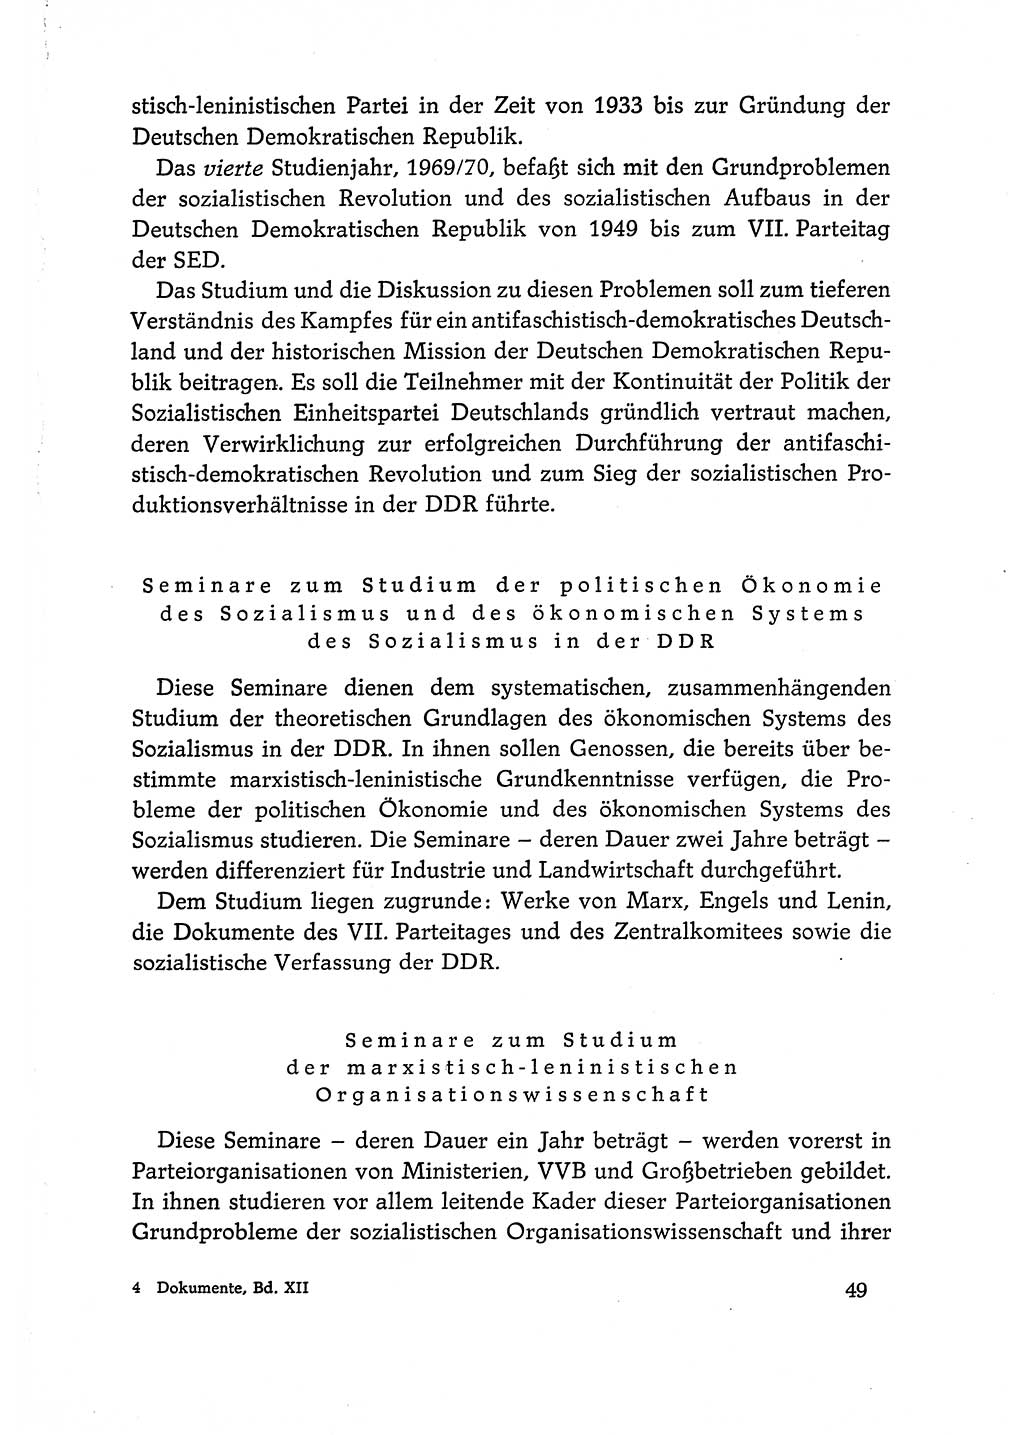 Dokumente der Sozialistischen Einheitspartei Deutschlands (SED) [Deutsche Demokratische Republik (DDR)] 1968-1969, Seite 49 (Dok. SED DDR 1968-1969, S. 49)